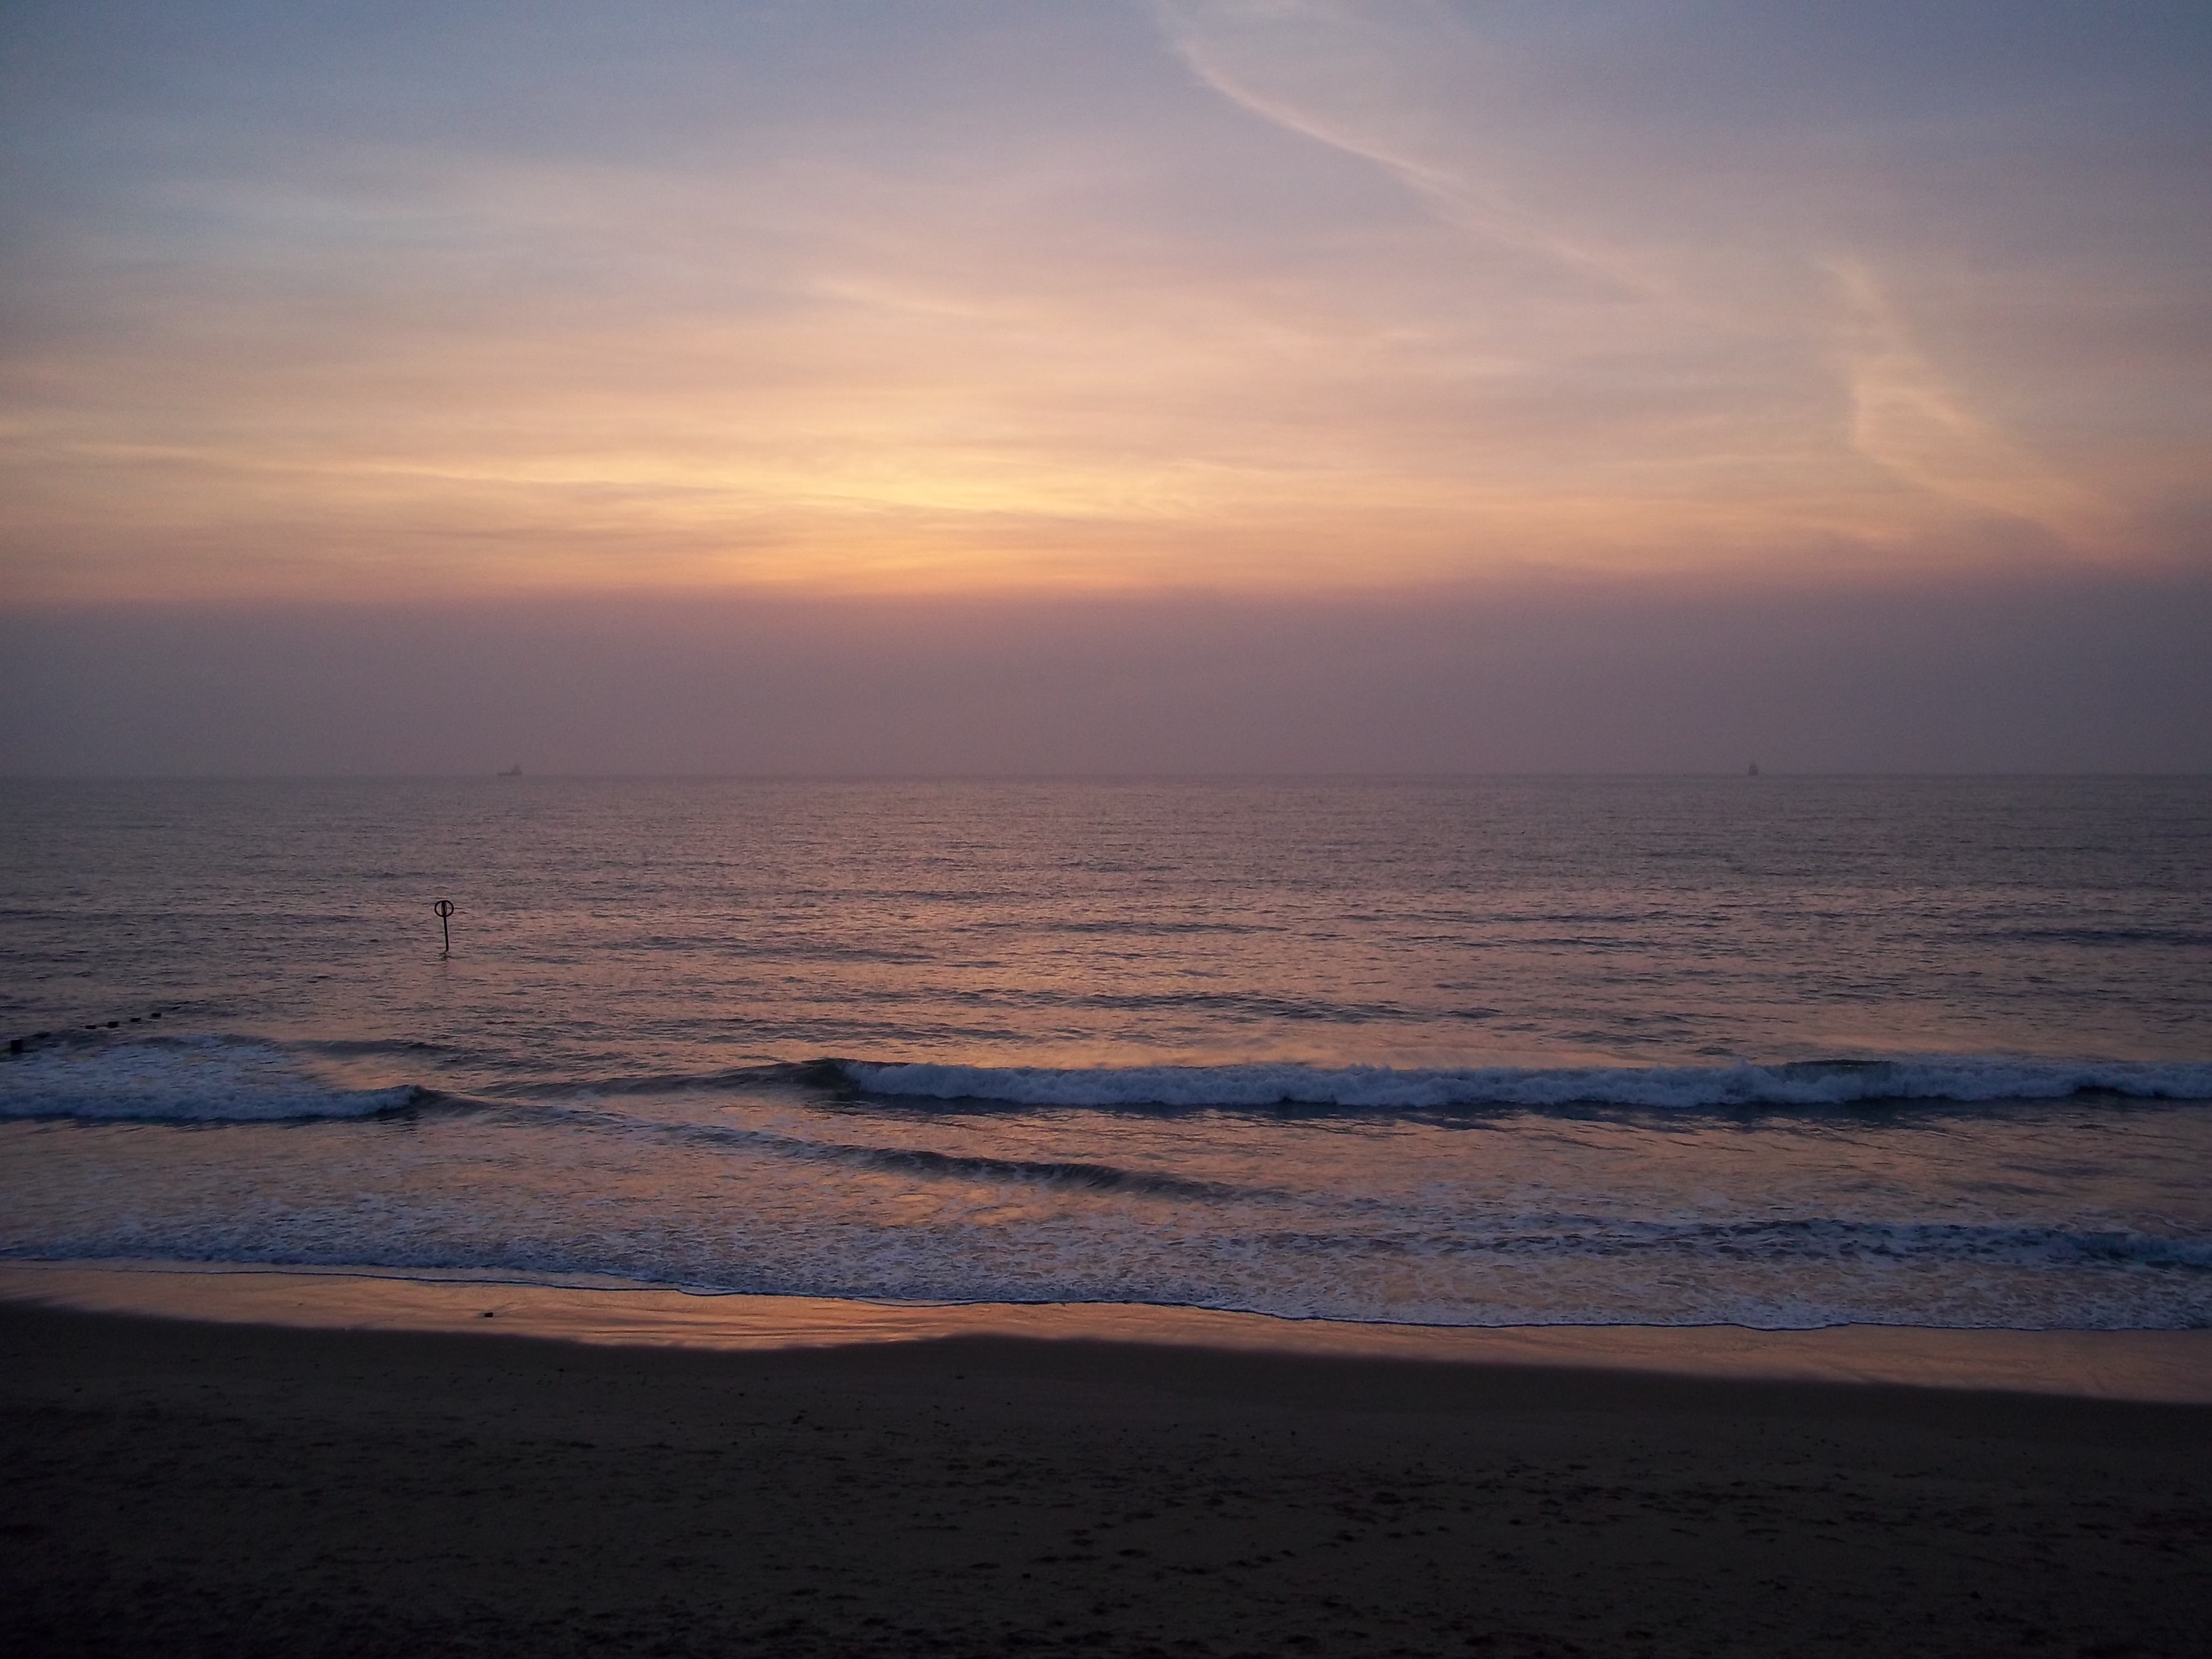 Photograph: Aberdeen Beach Sunrise